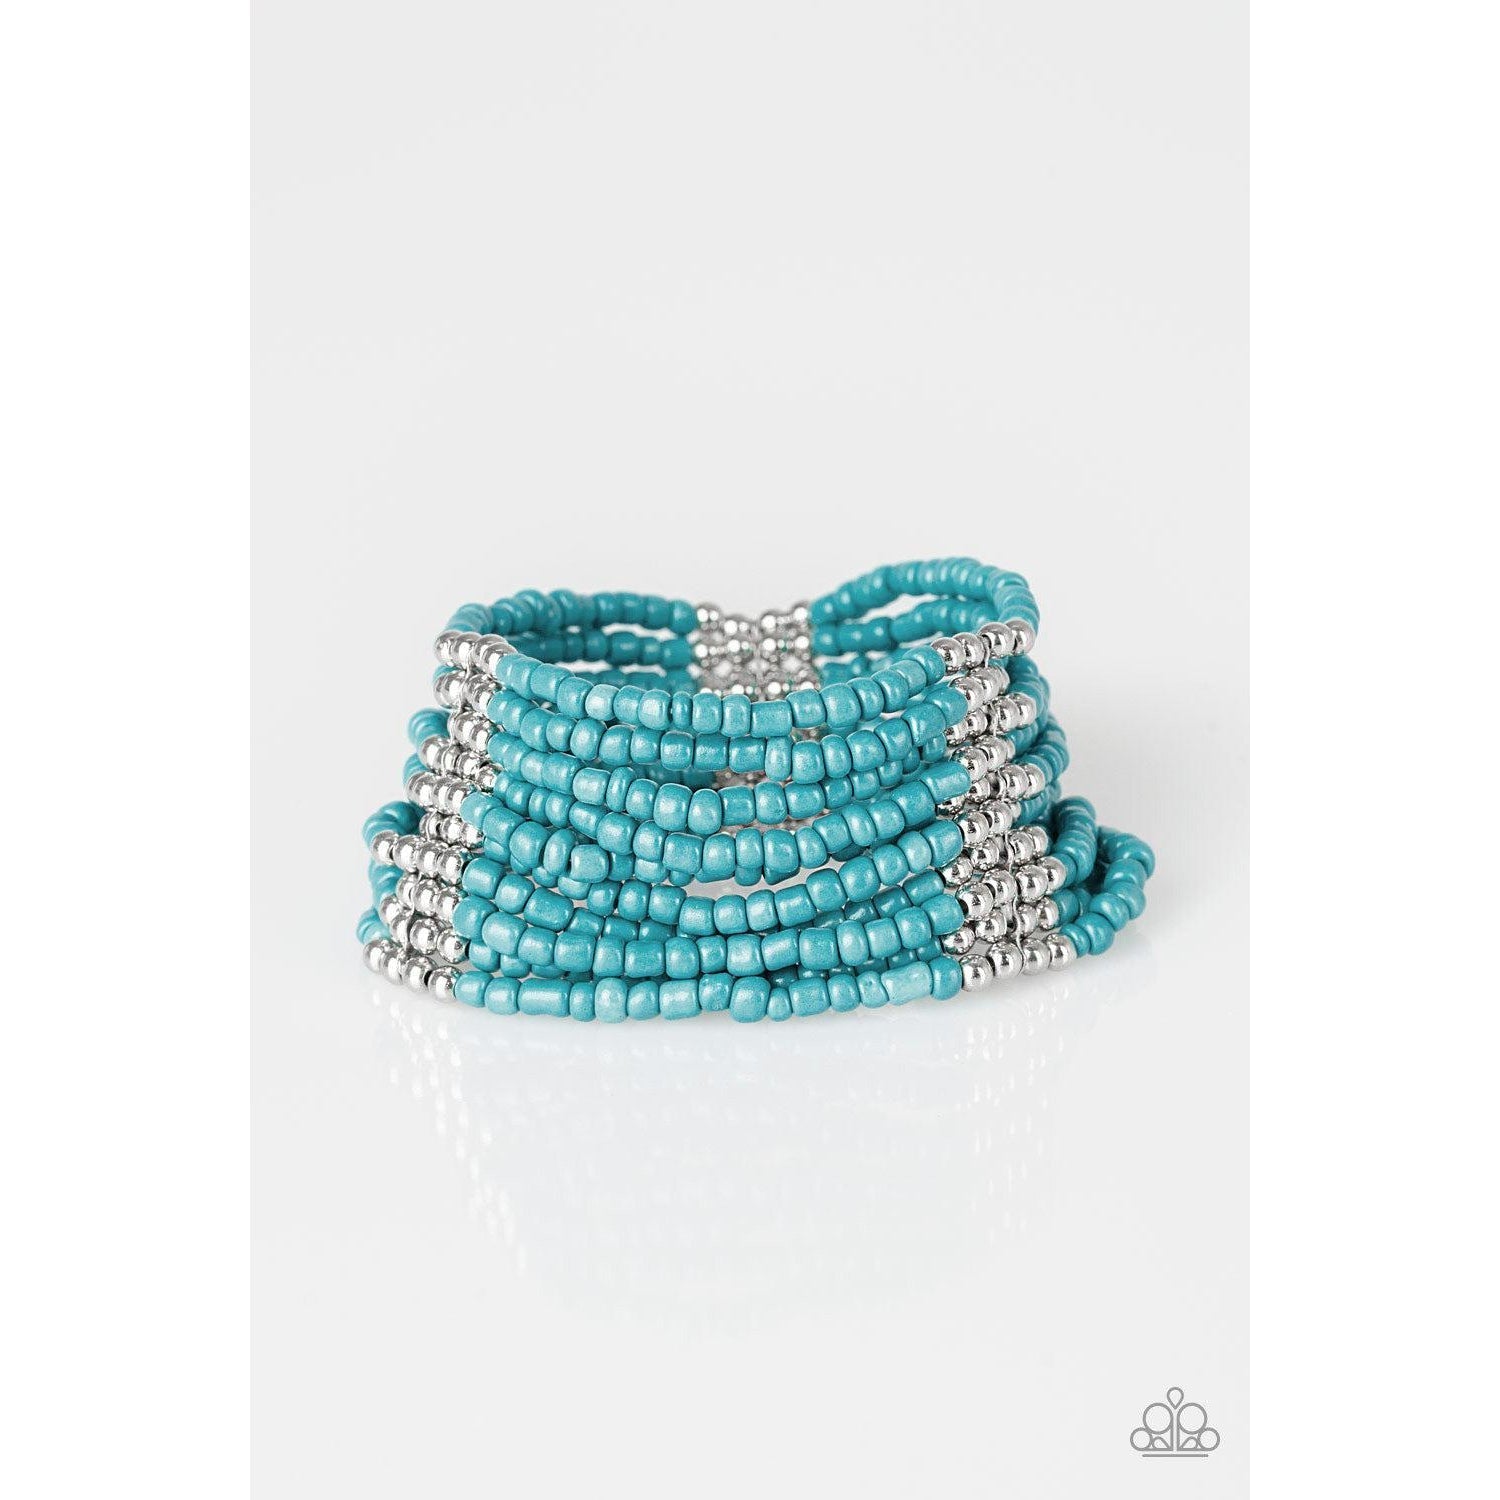 Paparazzi Outback Odessey Blue Seed Beads Stretch Bracelet-Bracelet-SPARKLE ARMAND